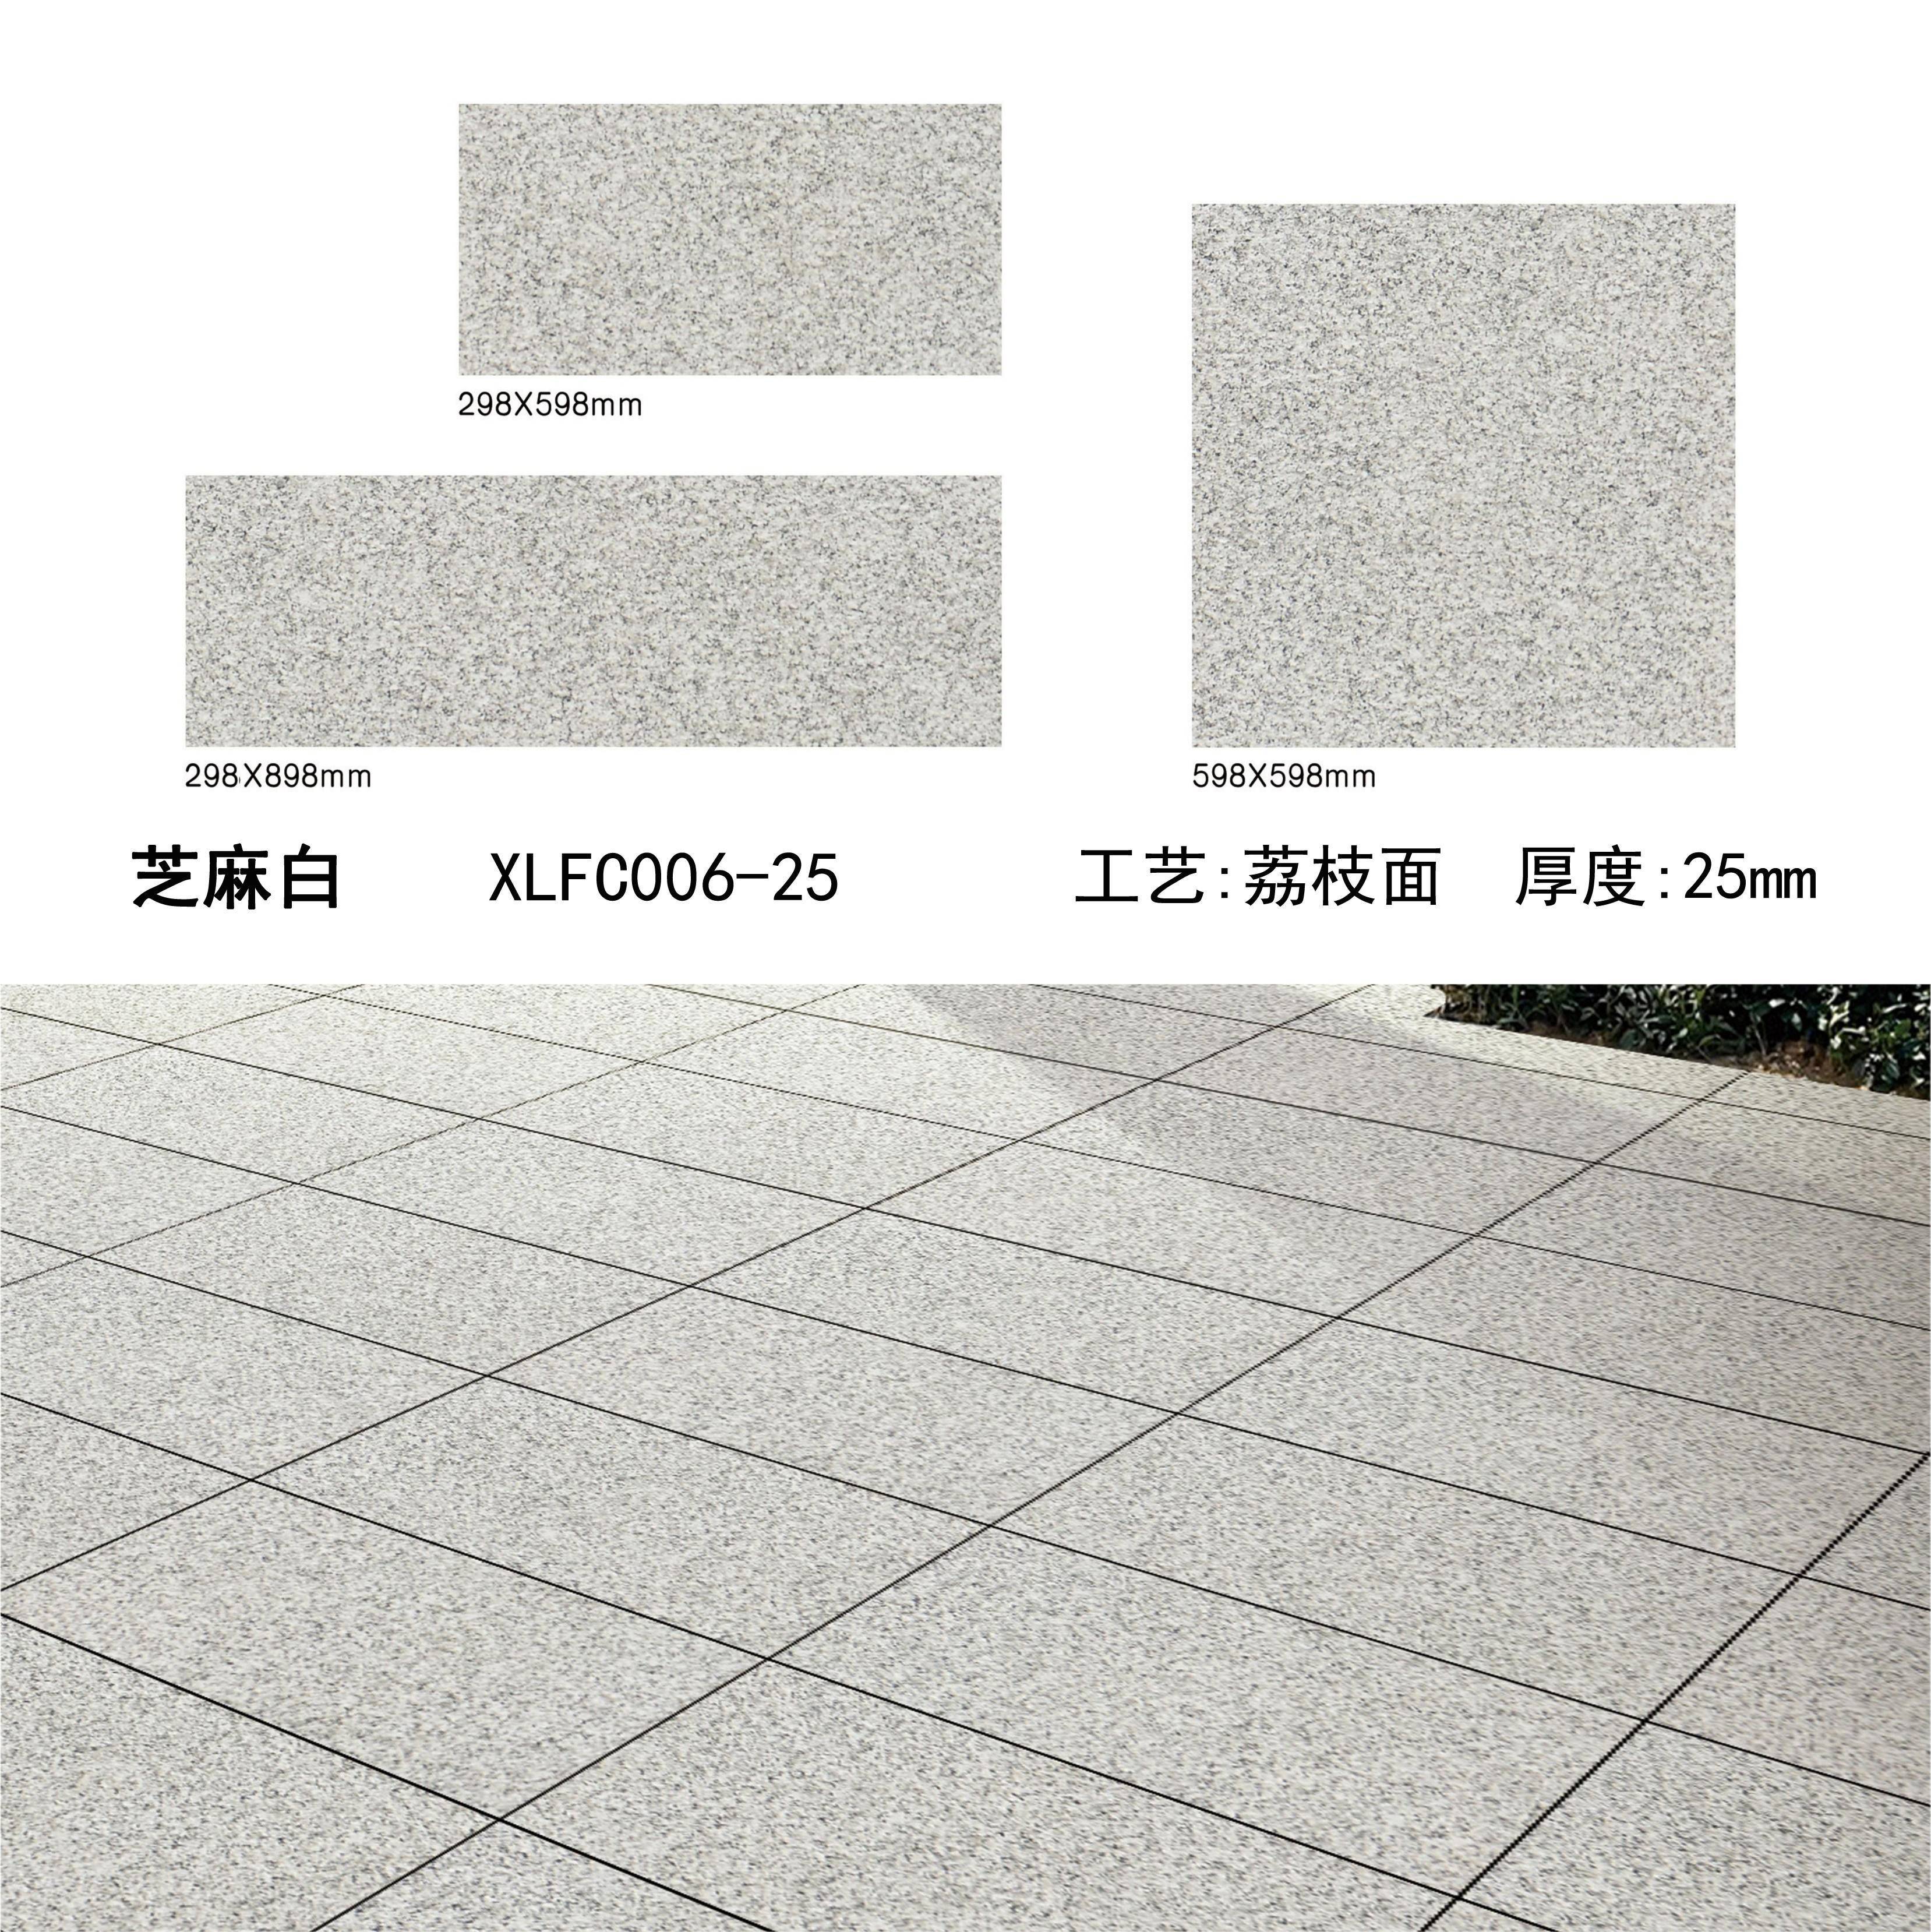 芝麻白PC砖（06-25）-南安市欣龙建材发展有限公司